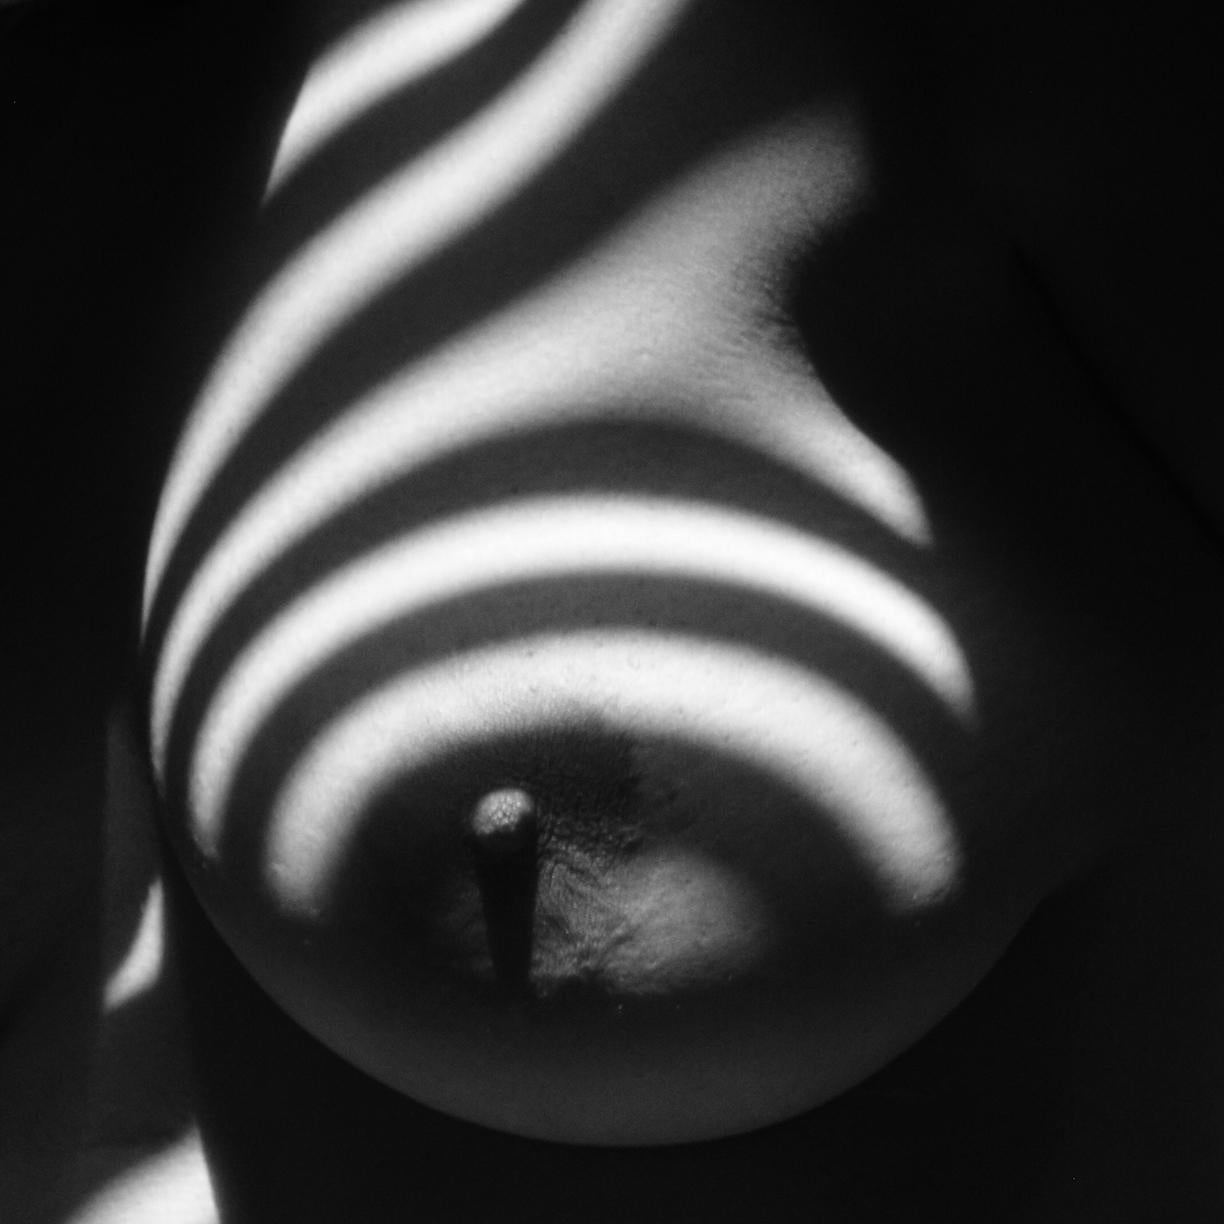 Savannah Spirit Black and White Photograph - Nipple Detail (Black and White Nude Photography, B&W Nude)